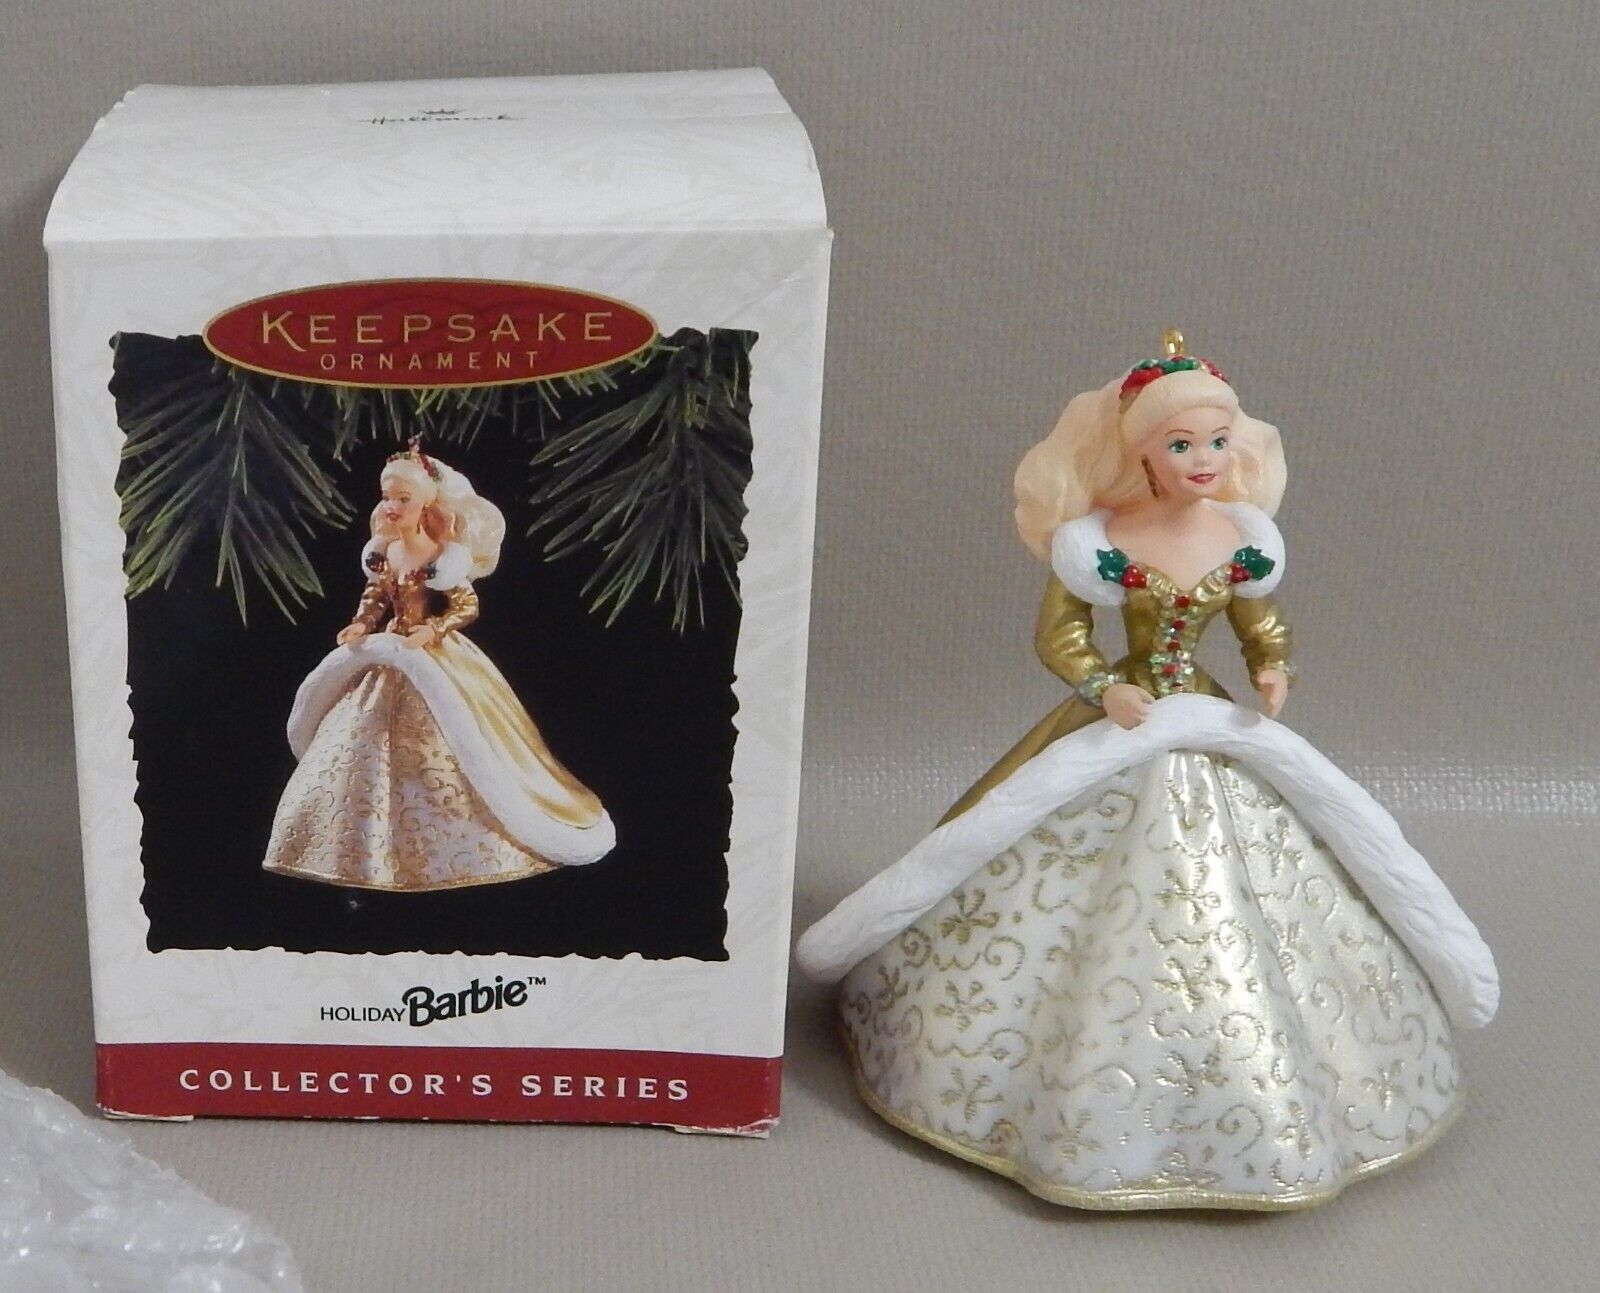 Vintage  Holiday Barbie Hallmark Keepsake Ornament #2 (1994) Collector’s Series